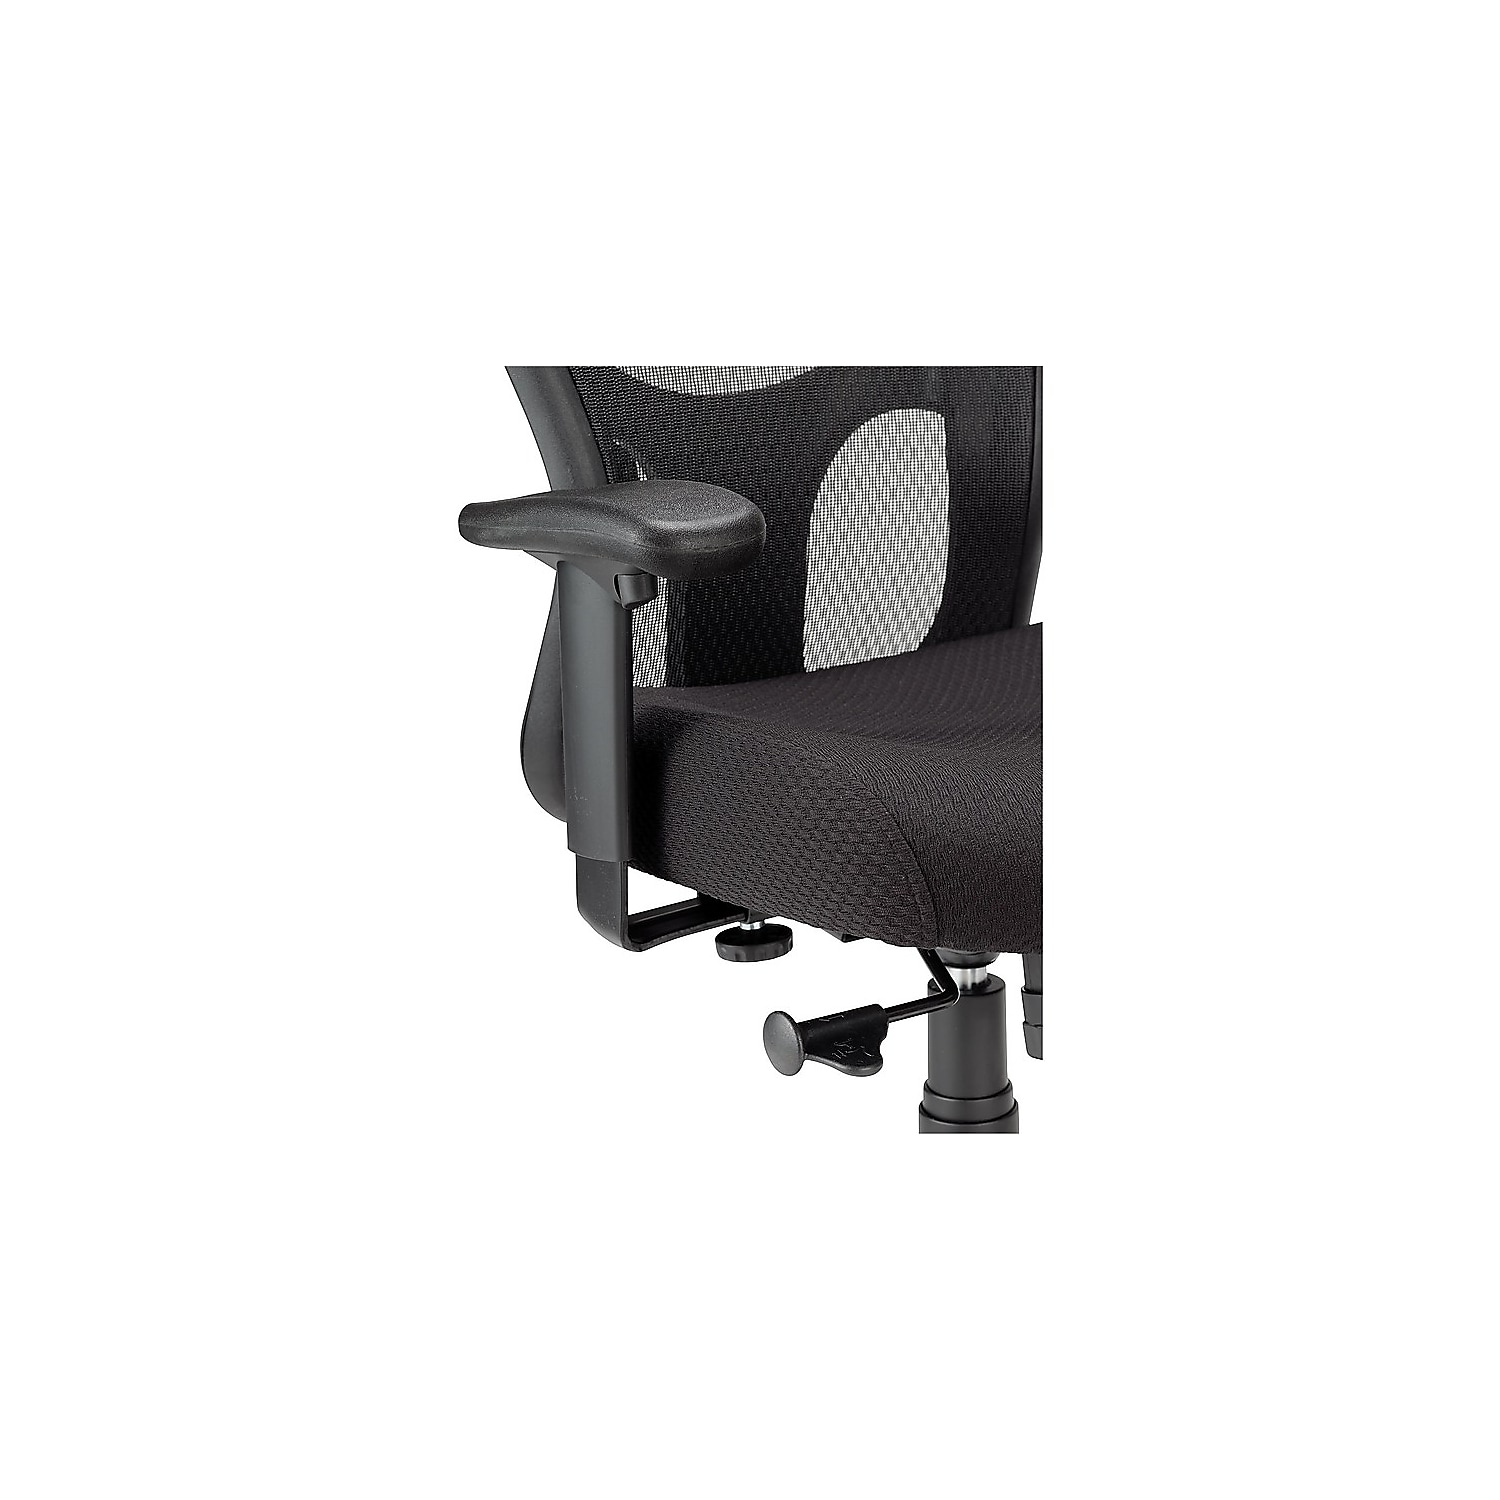 Tempur-Pedic TP9000 Mesh Task Chair Black (TP9000) 324021 - image 4 of 7